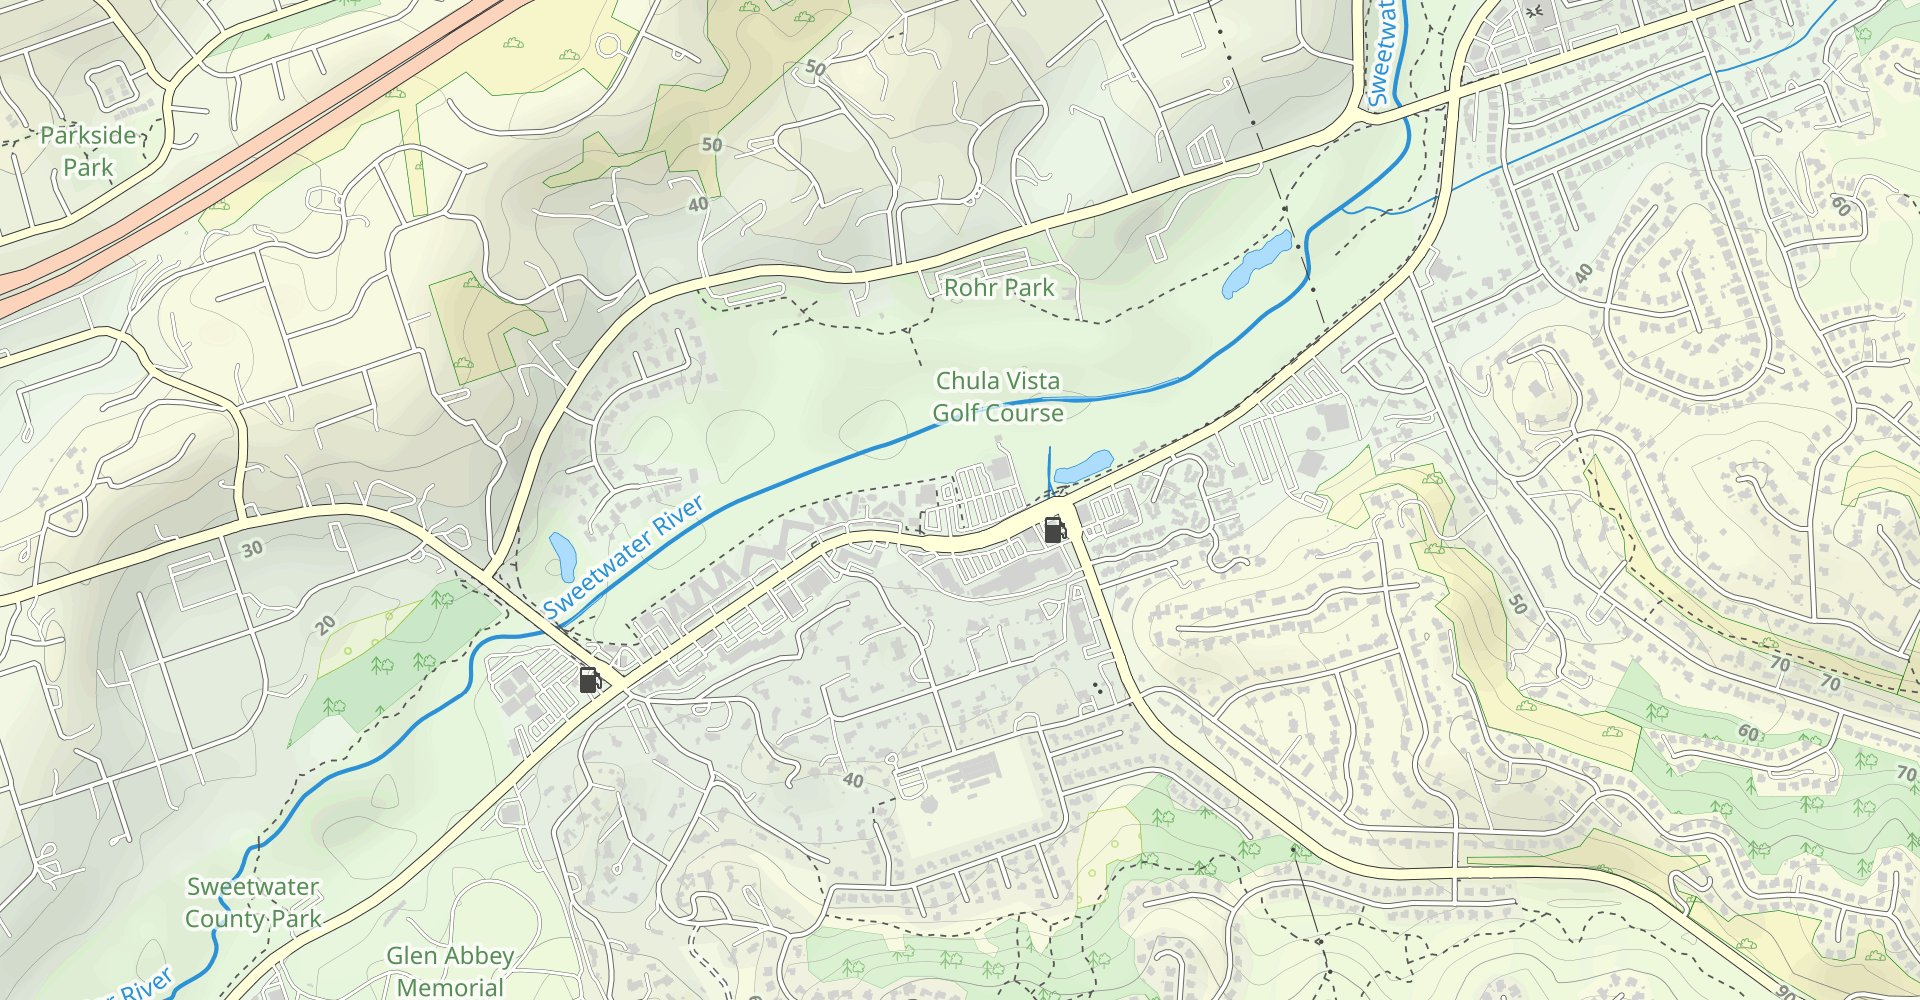 Sweetwater Park Trail Loop